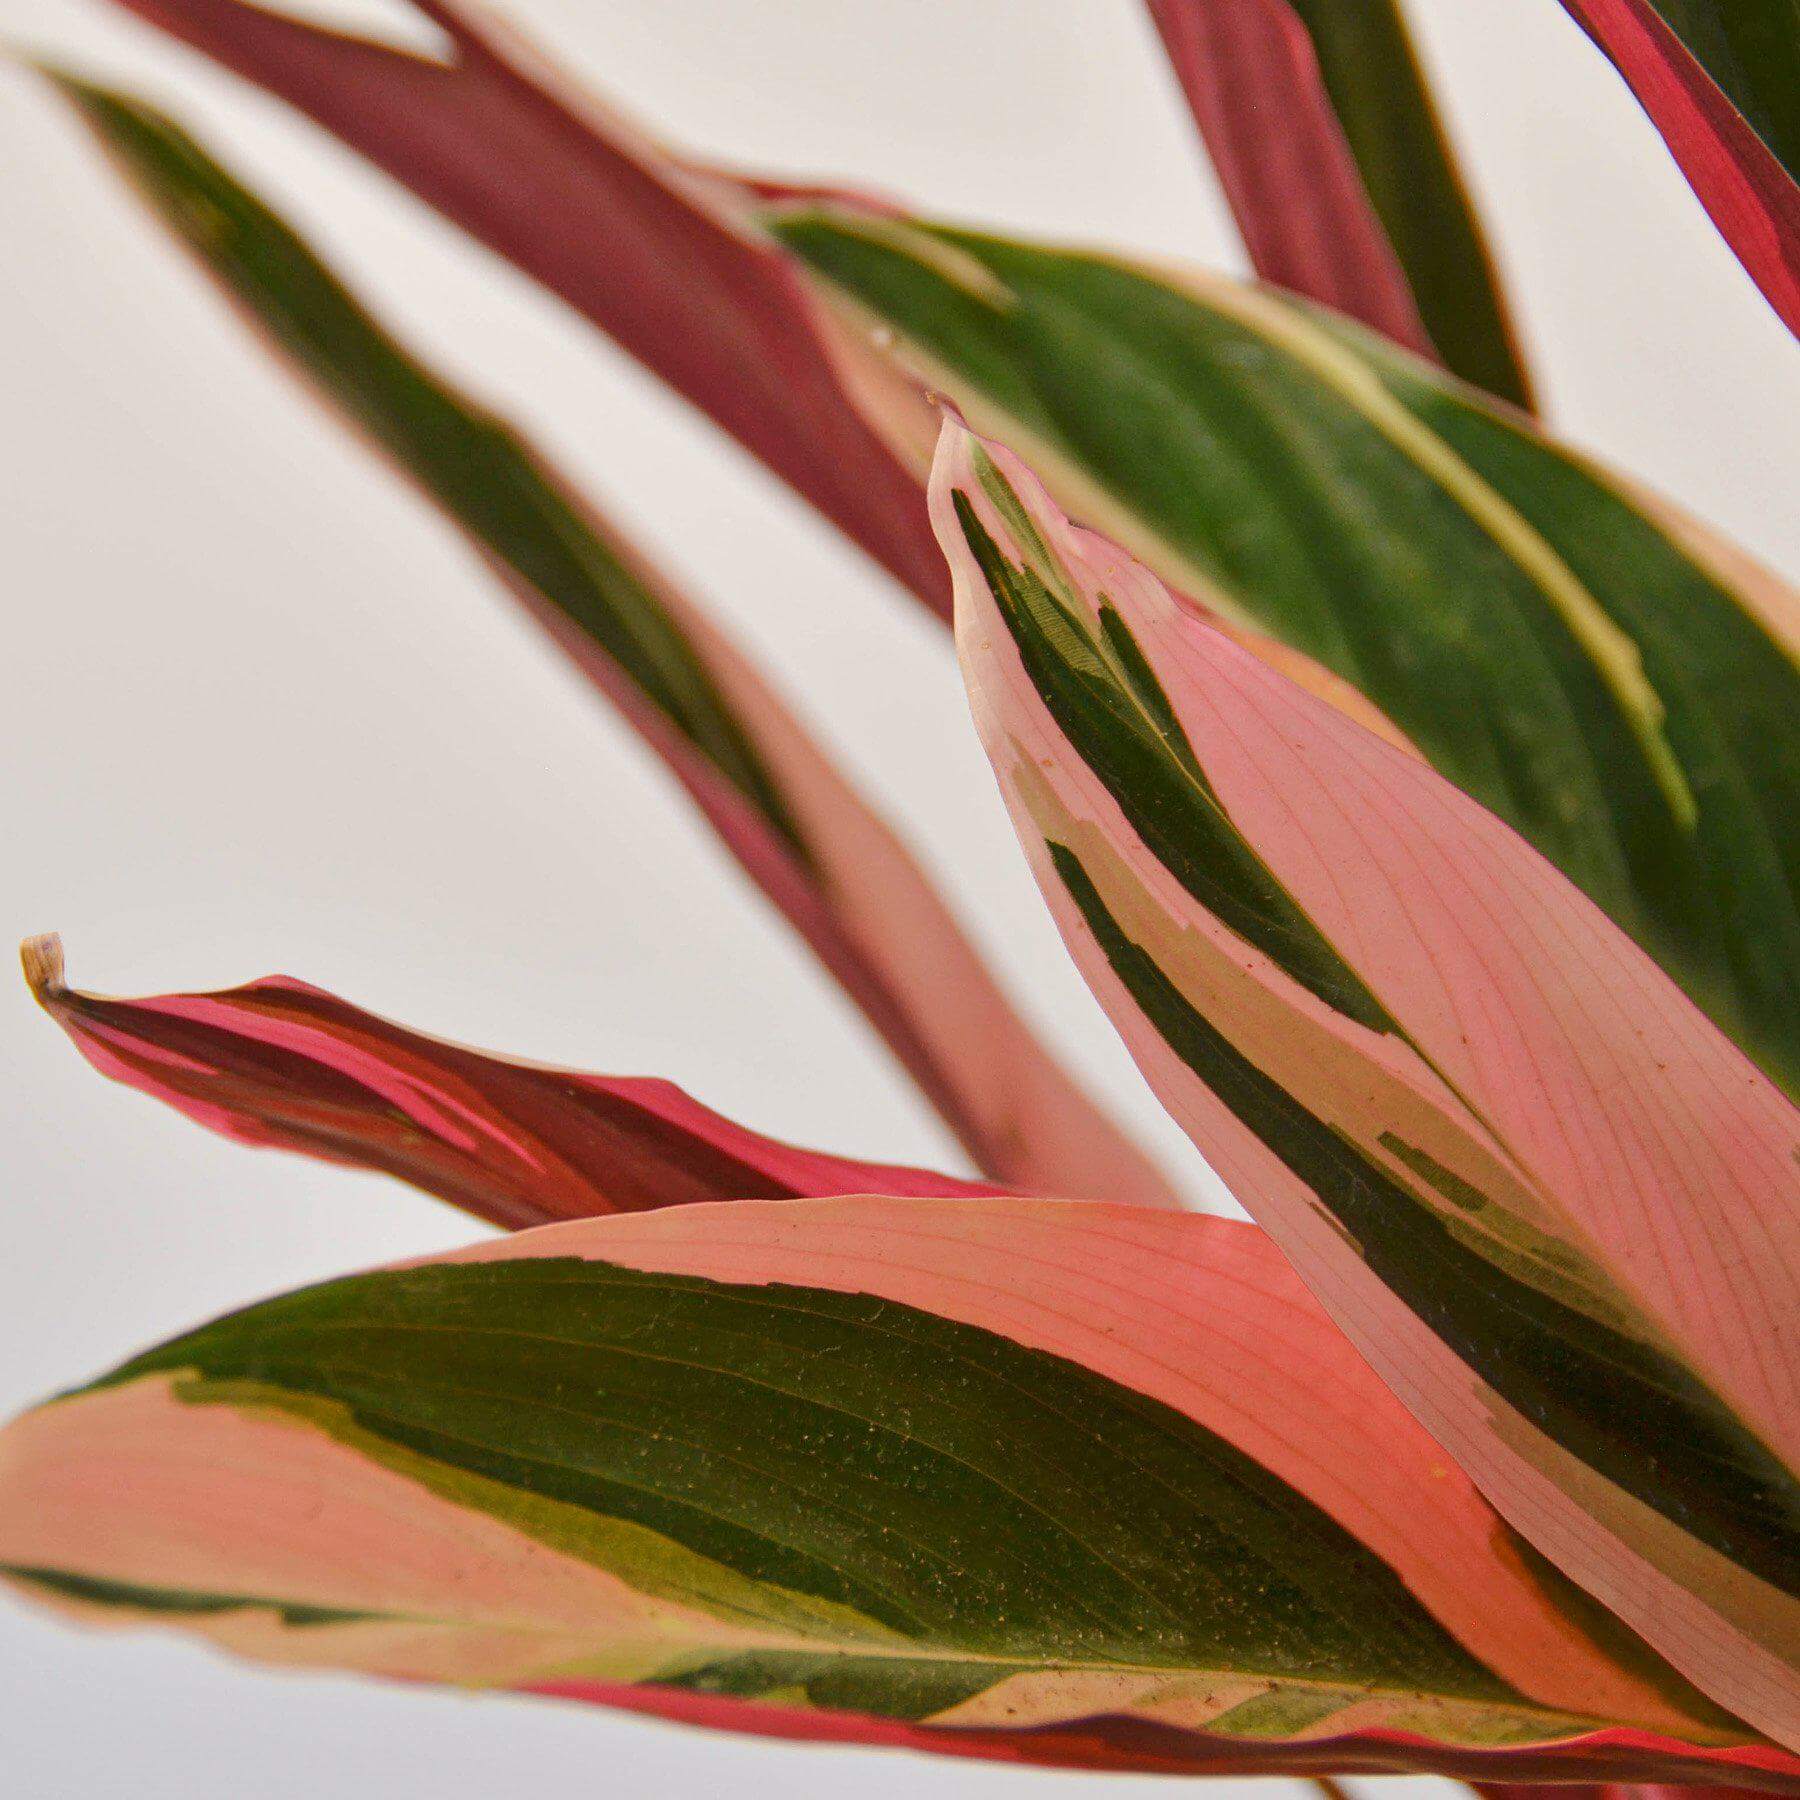 Stromanthe - Triostar | Modern house plants that clean the air